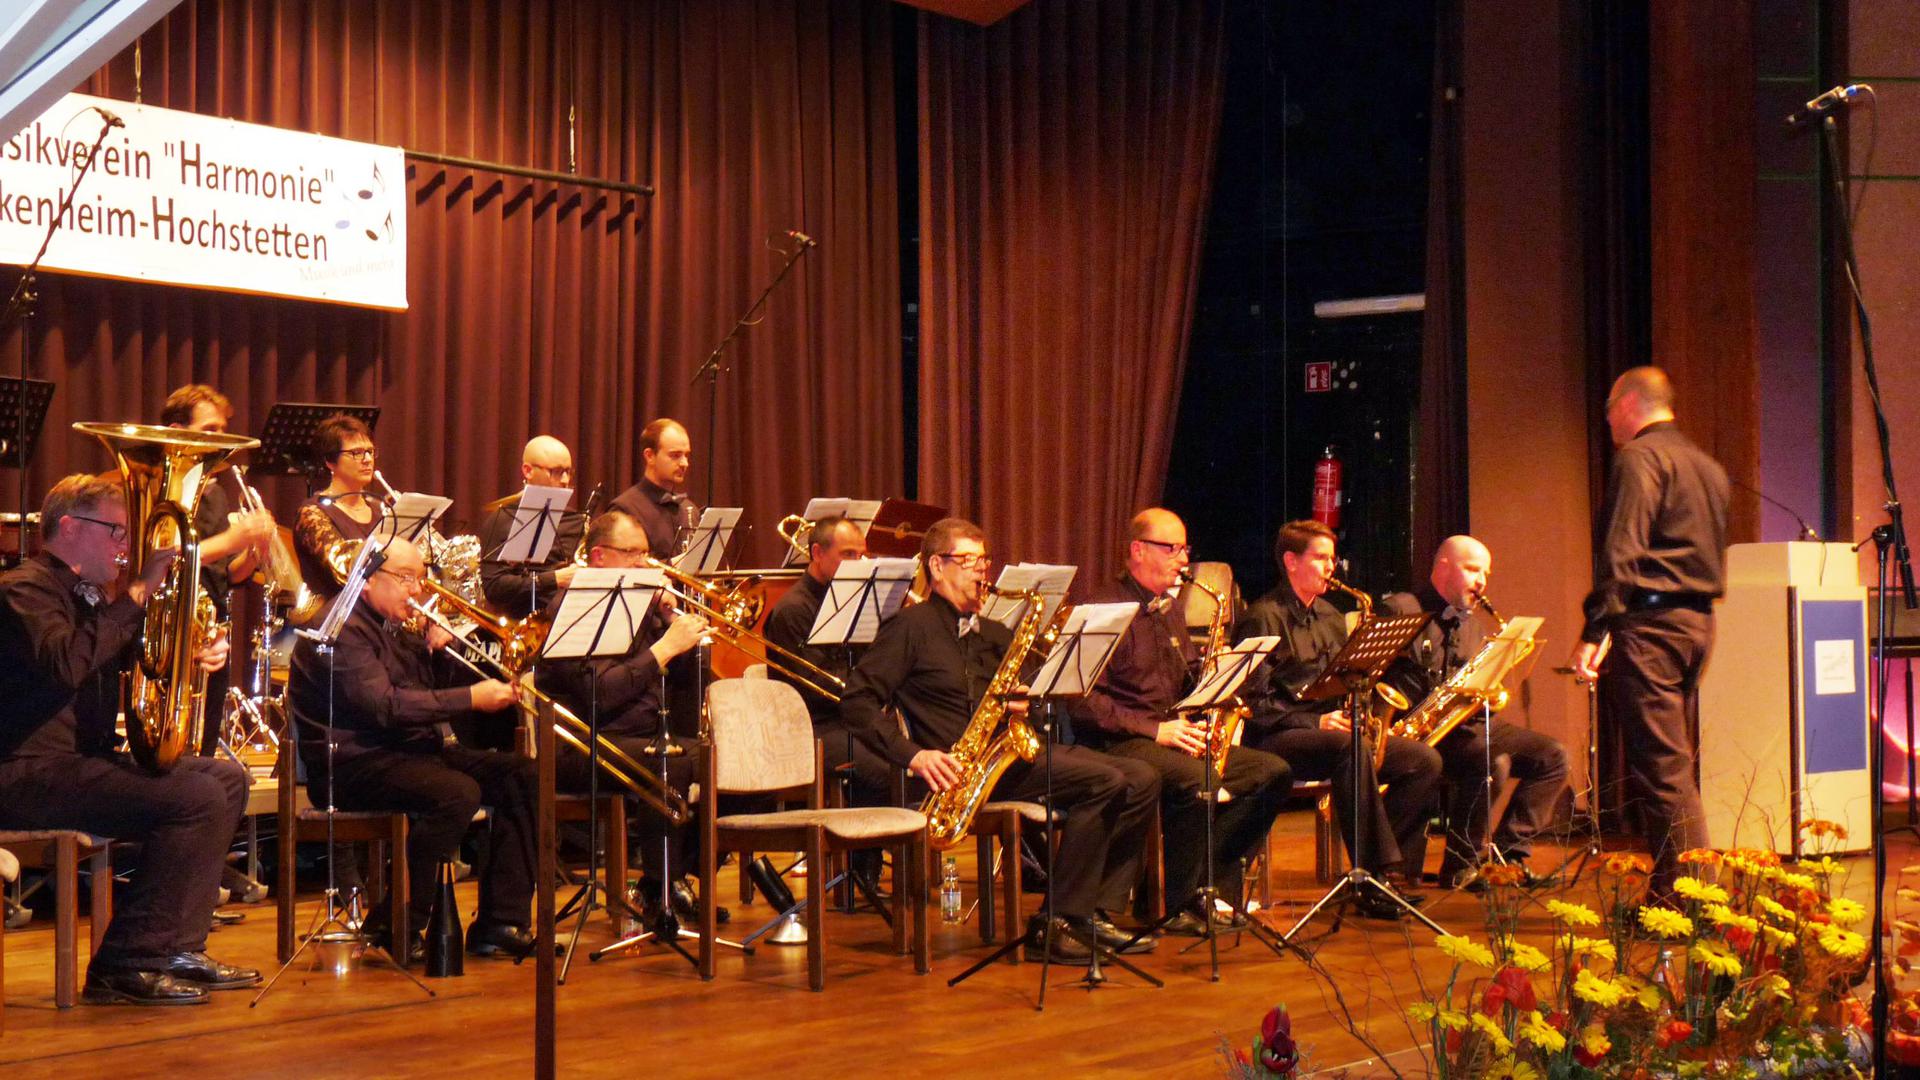 Ihre Premiere feierte die „Big Band“ beim großen Herbstkonzert des Musikvereins „Harmonie“ Linkenheim-Hochstetten. Die Band war eigens für den Event begründet worden.